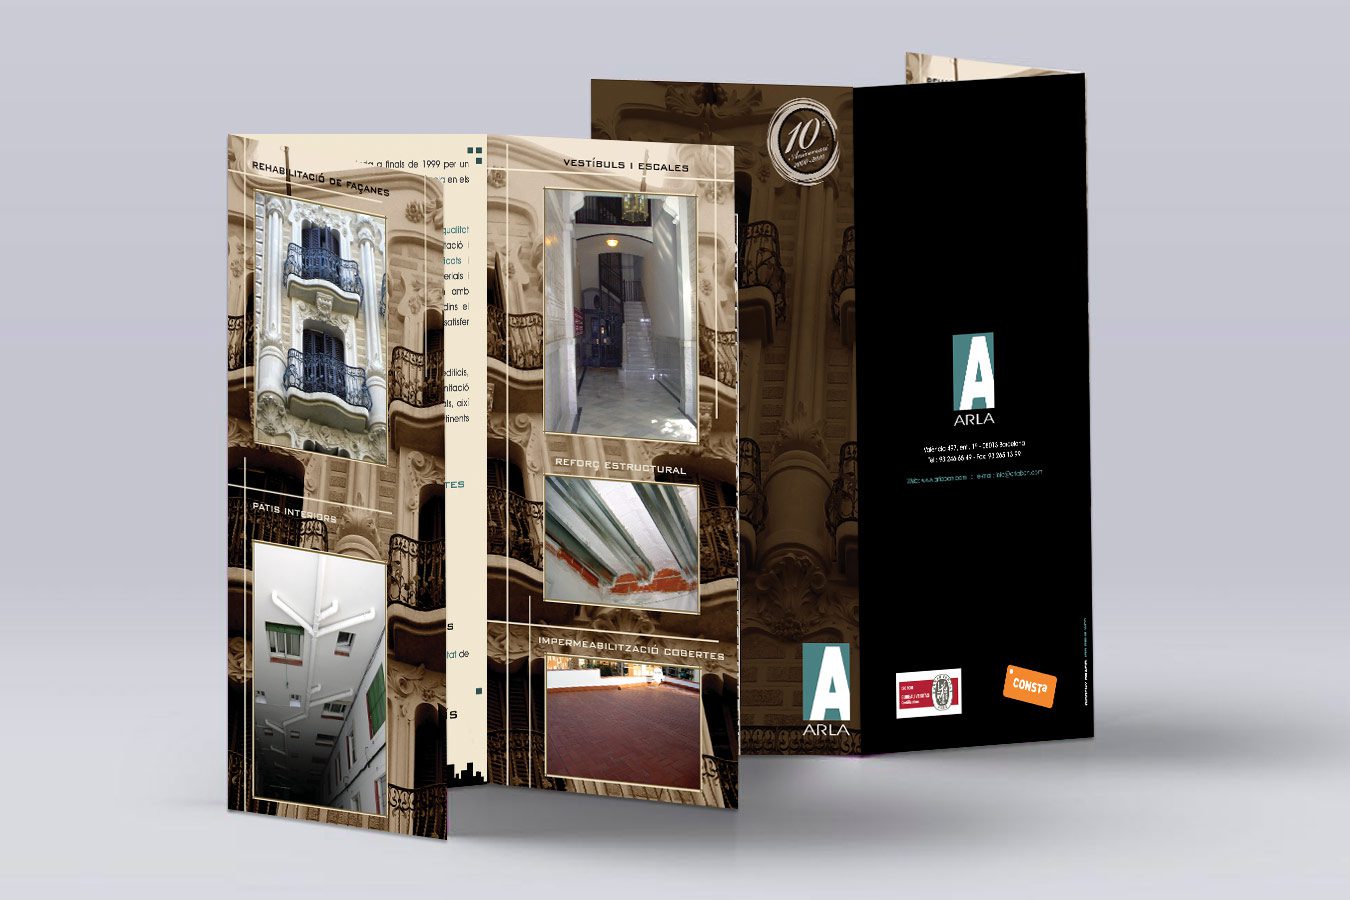 Diseño gráfico e Imprenta de TRÍPTICO Corporativo triple dinA4 para ARLA FACHADAS (Barcelona). Diseño: IDG GRUP WEB - Imagen Corporativa y Publicidad